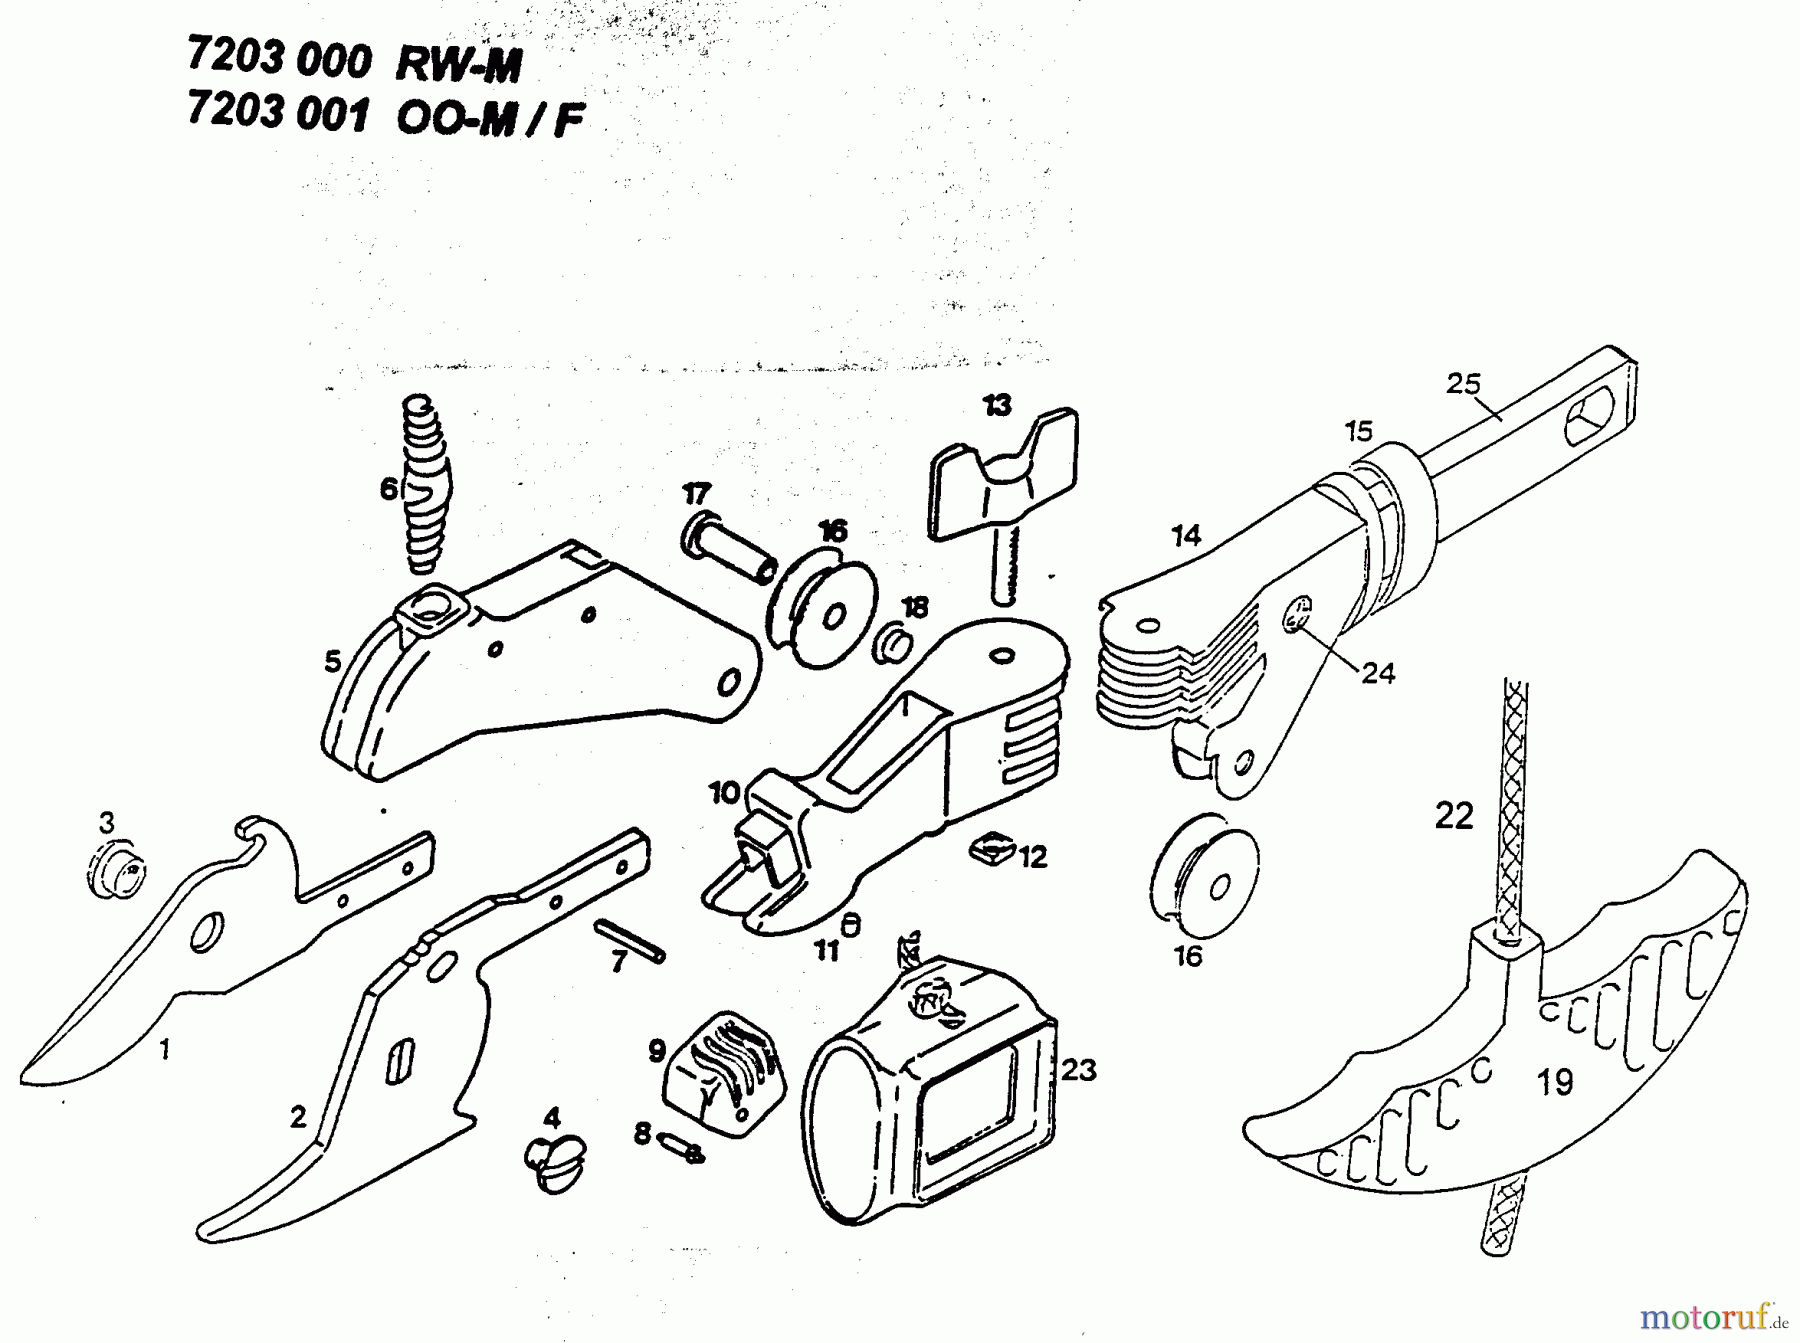  Wolf-Garten  multi-star ciseaux étang OO-M 7203001  (1996) Machine de base